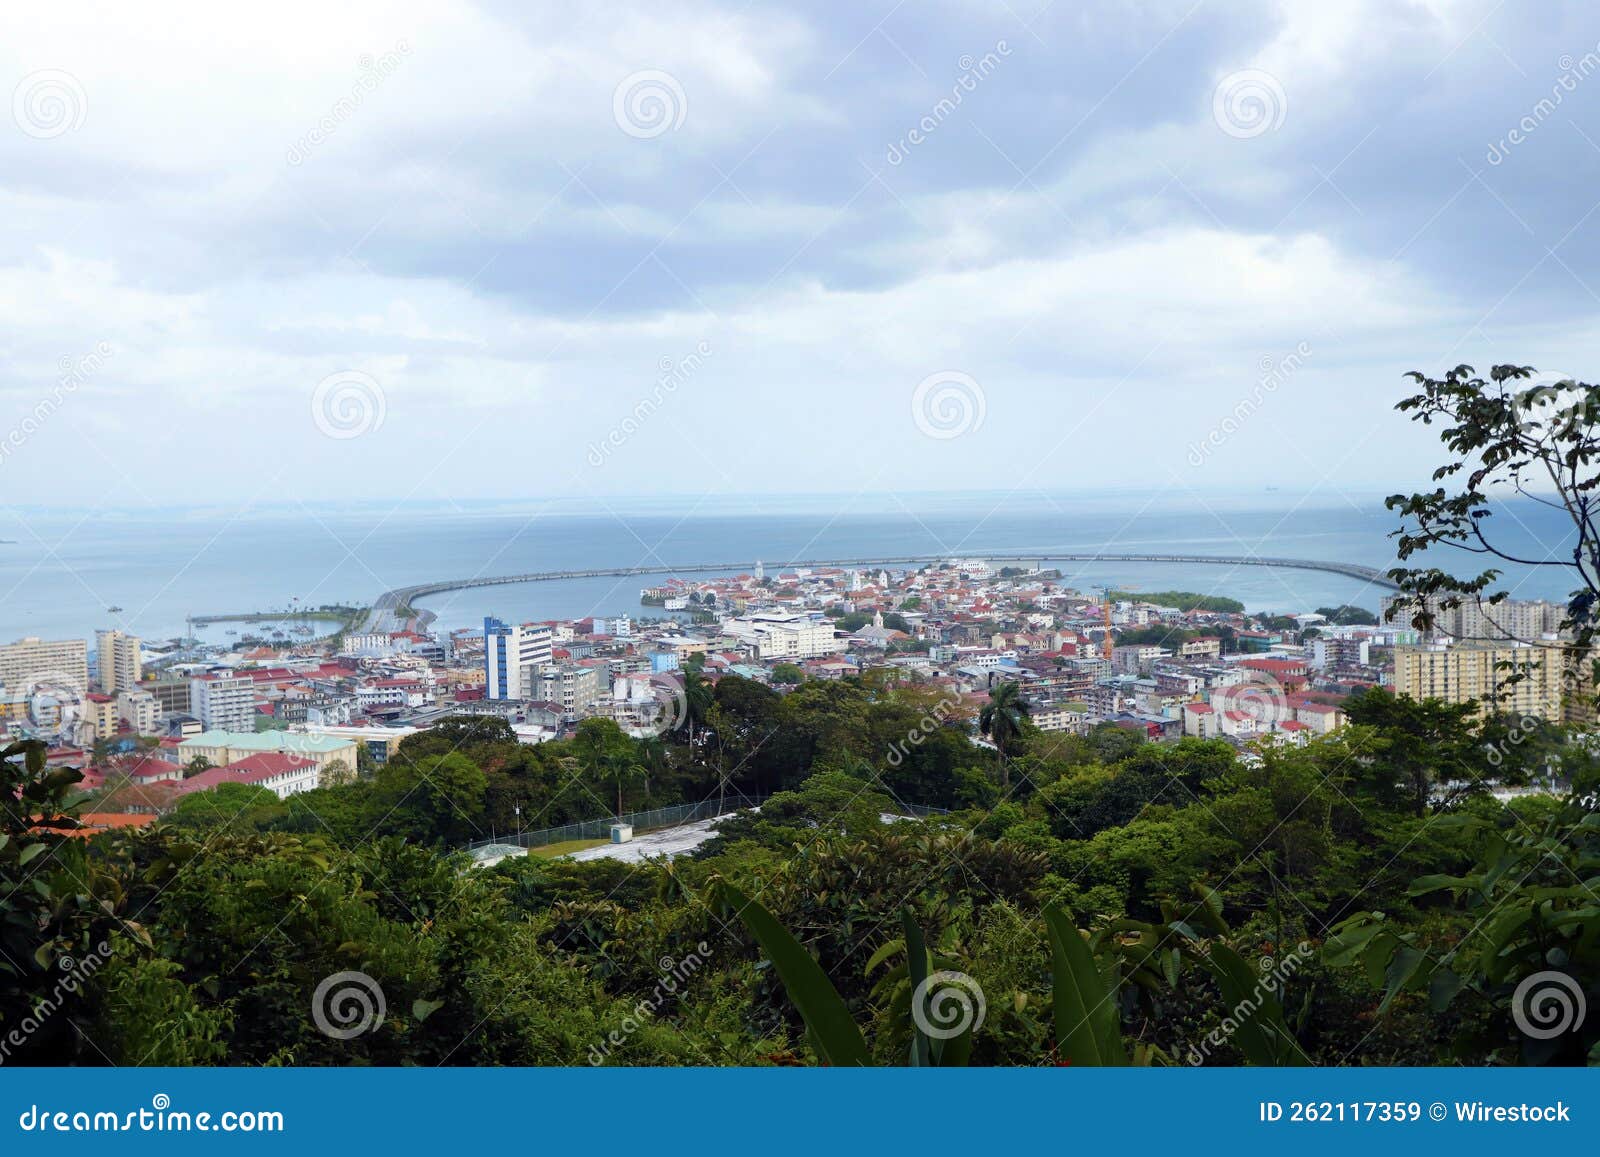 ciudad de panama city casco antiguo air view ocean skyline